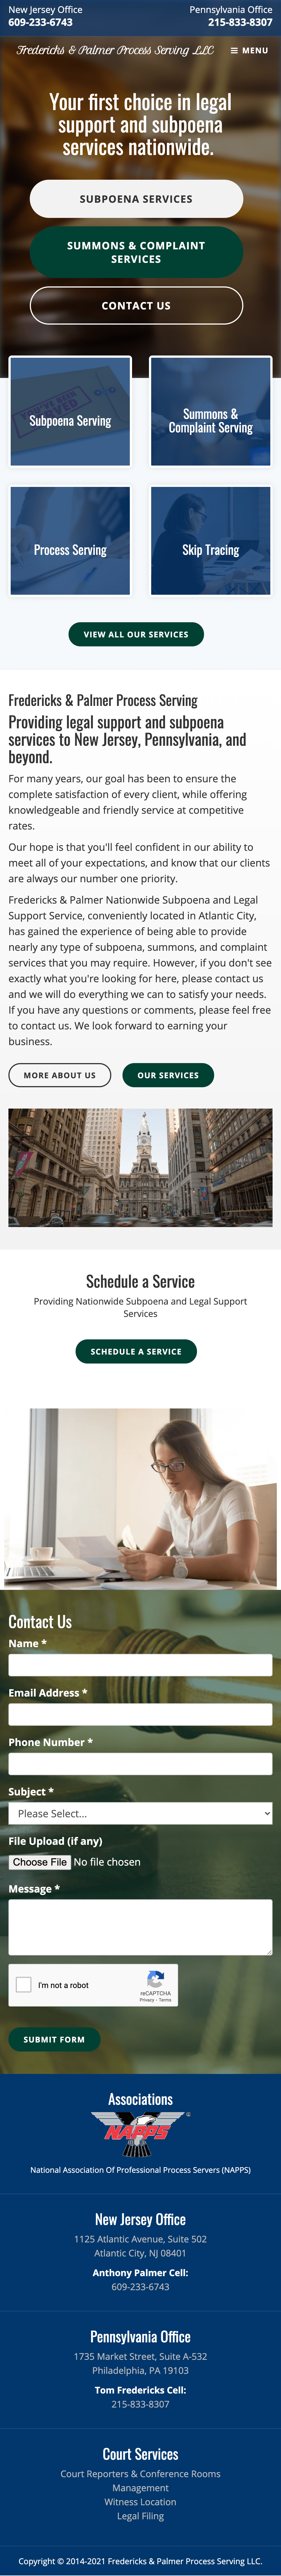 Fredericks & Palmer Process Serving Website - Mobile